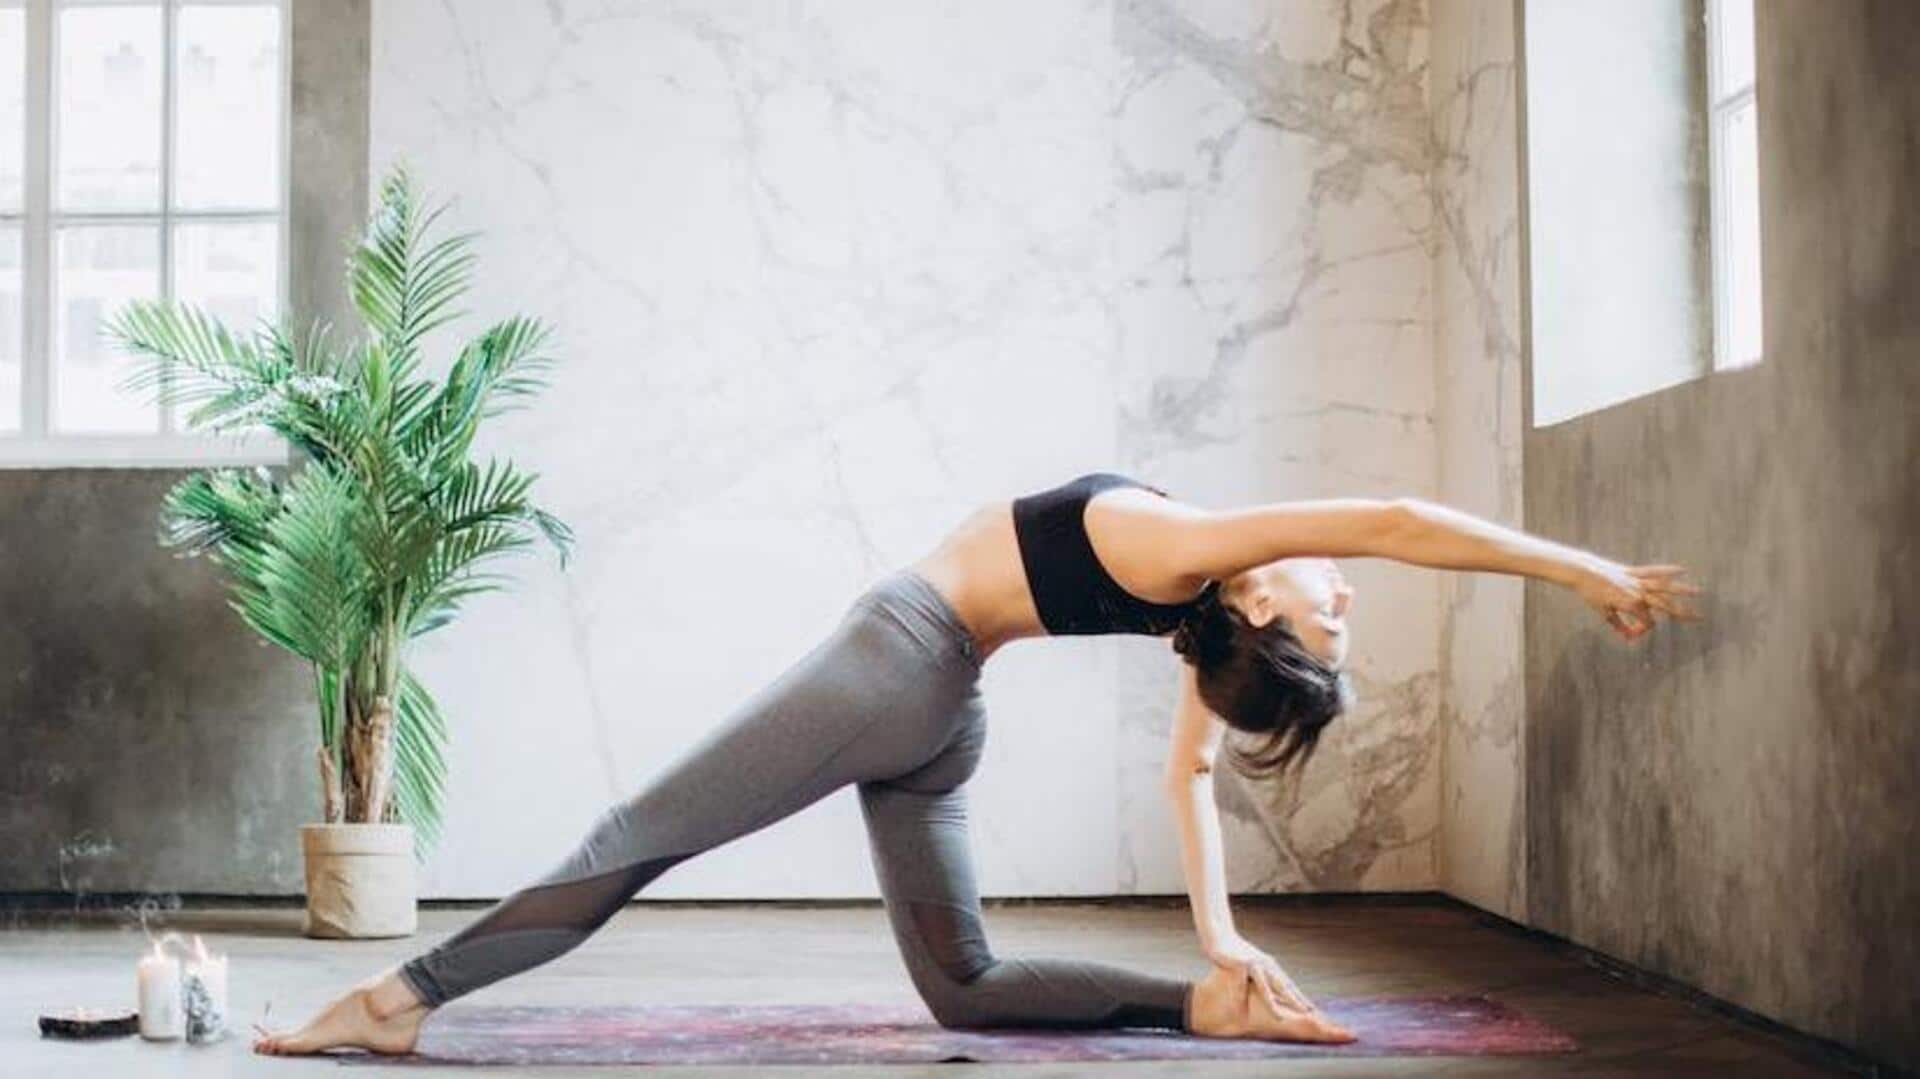 Yoga poses to improve Pancreatic health